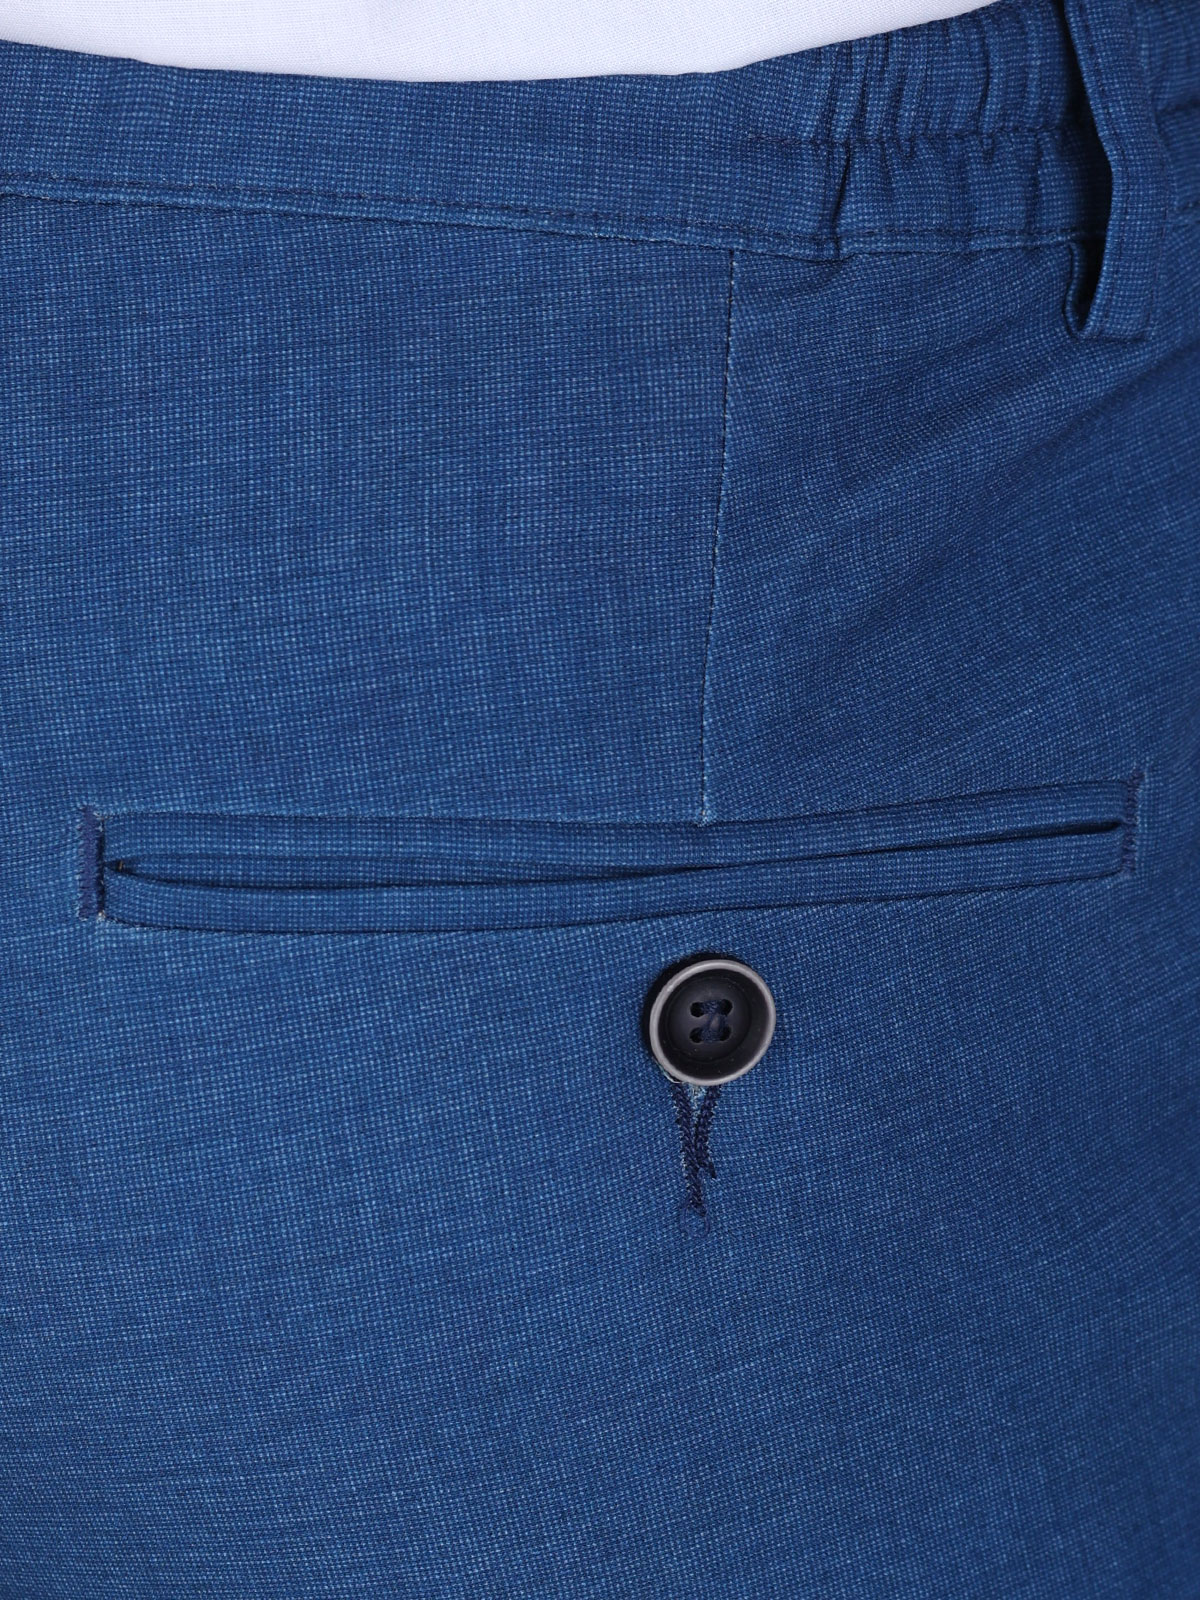 Κοστούμι δύο τεμαχίων σε μπλε χρώμα - 68065 € 201.91 img5